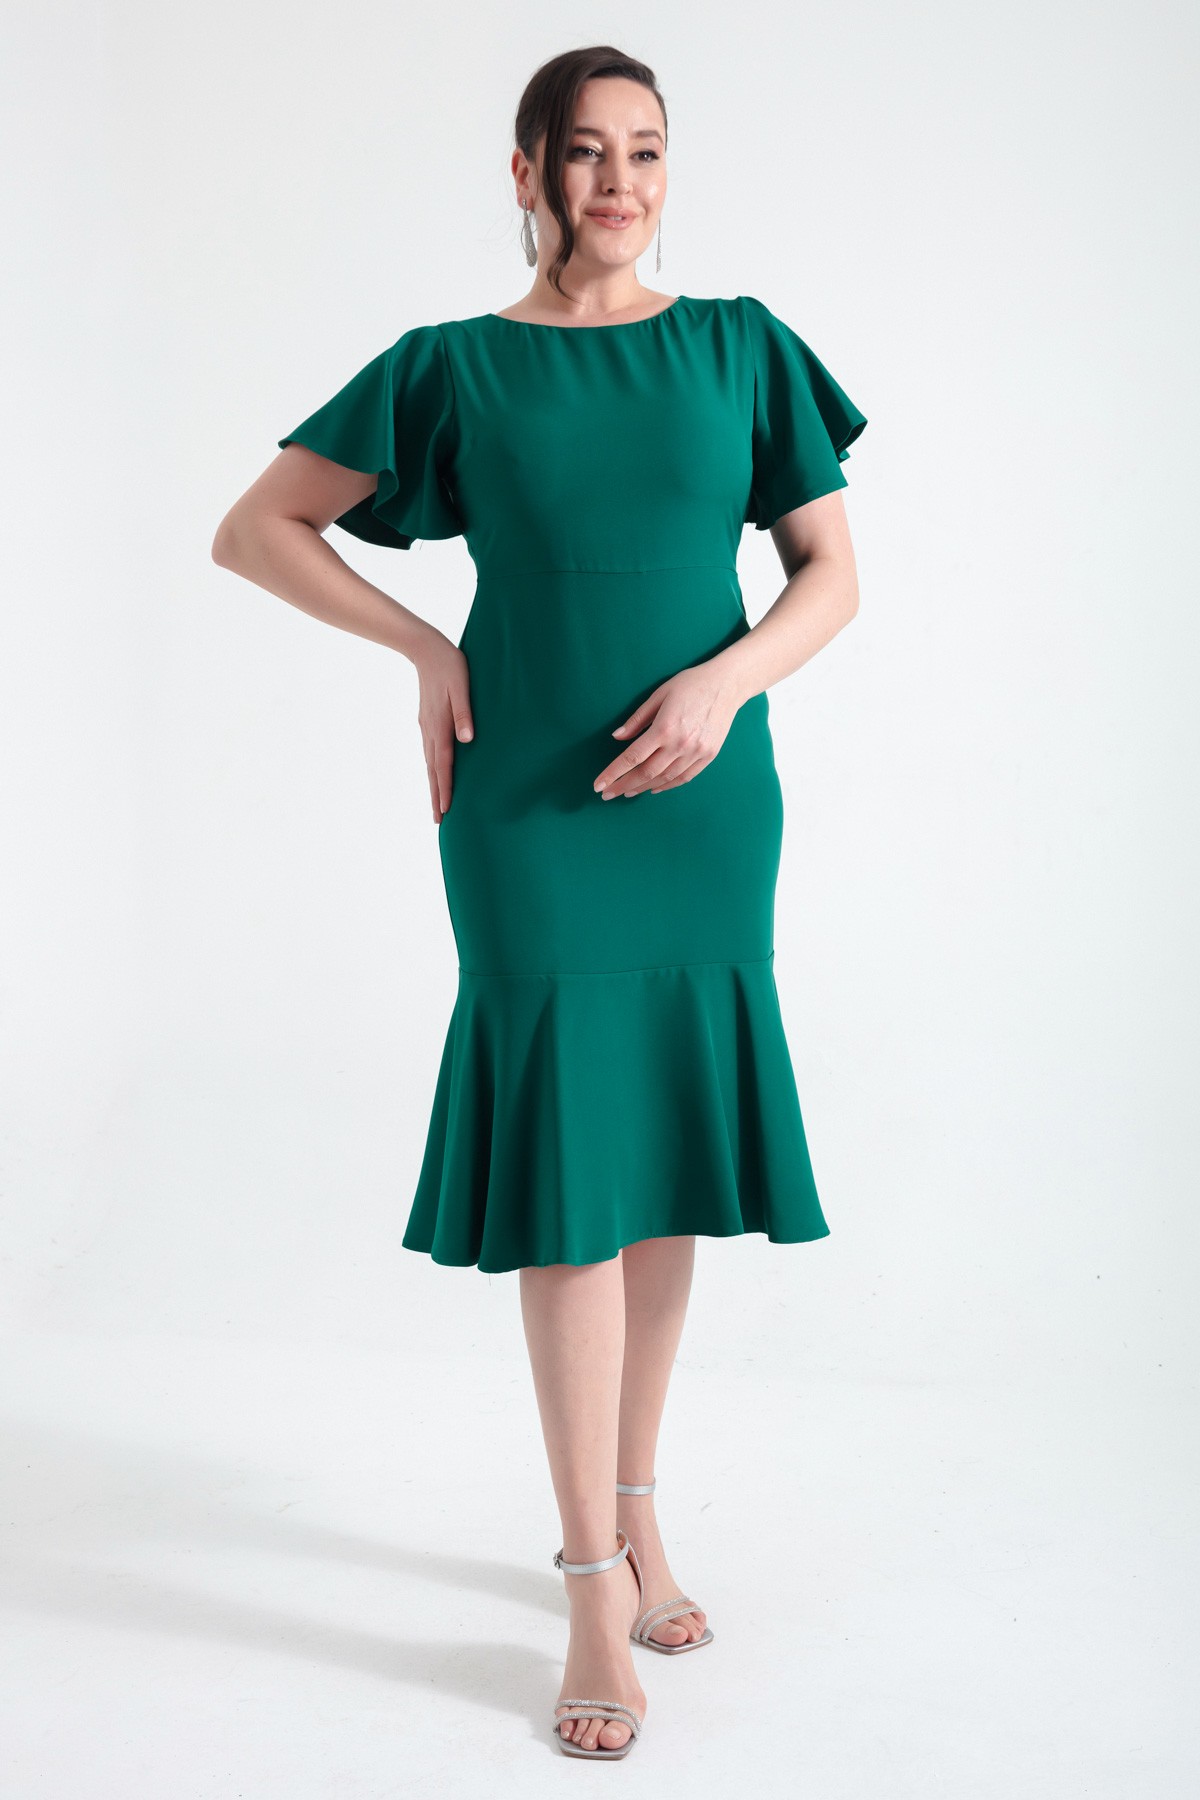 Kadın Büyük Beden Volanlı Elbise - Zümrüt Yeşili